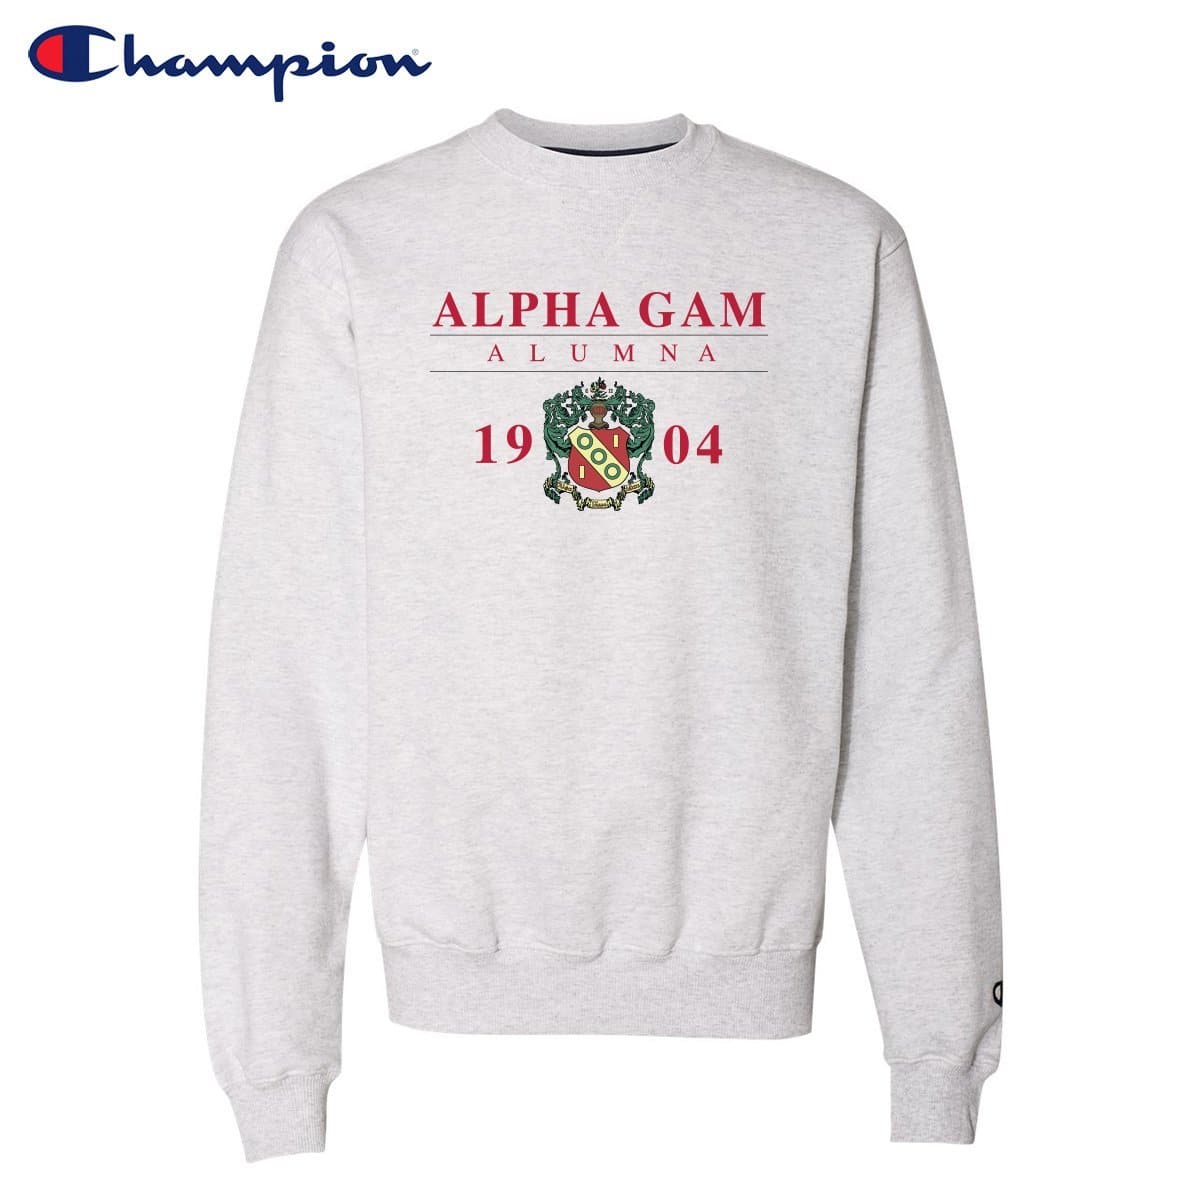 Alpha Gam Alumni Champion Sweatshirt | Alpha Gamma Delta | Sweatshirts > Crewneck sweatshirts